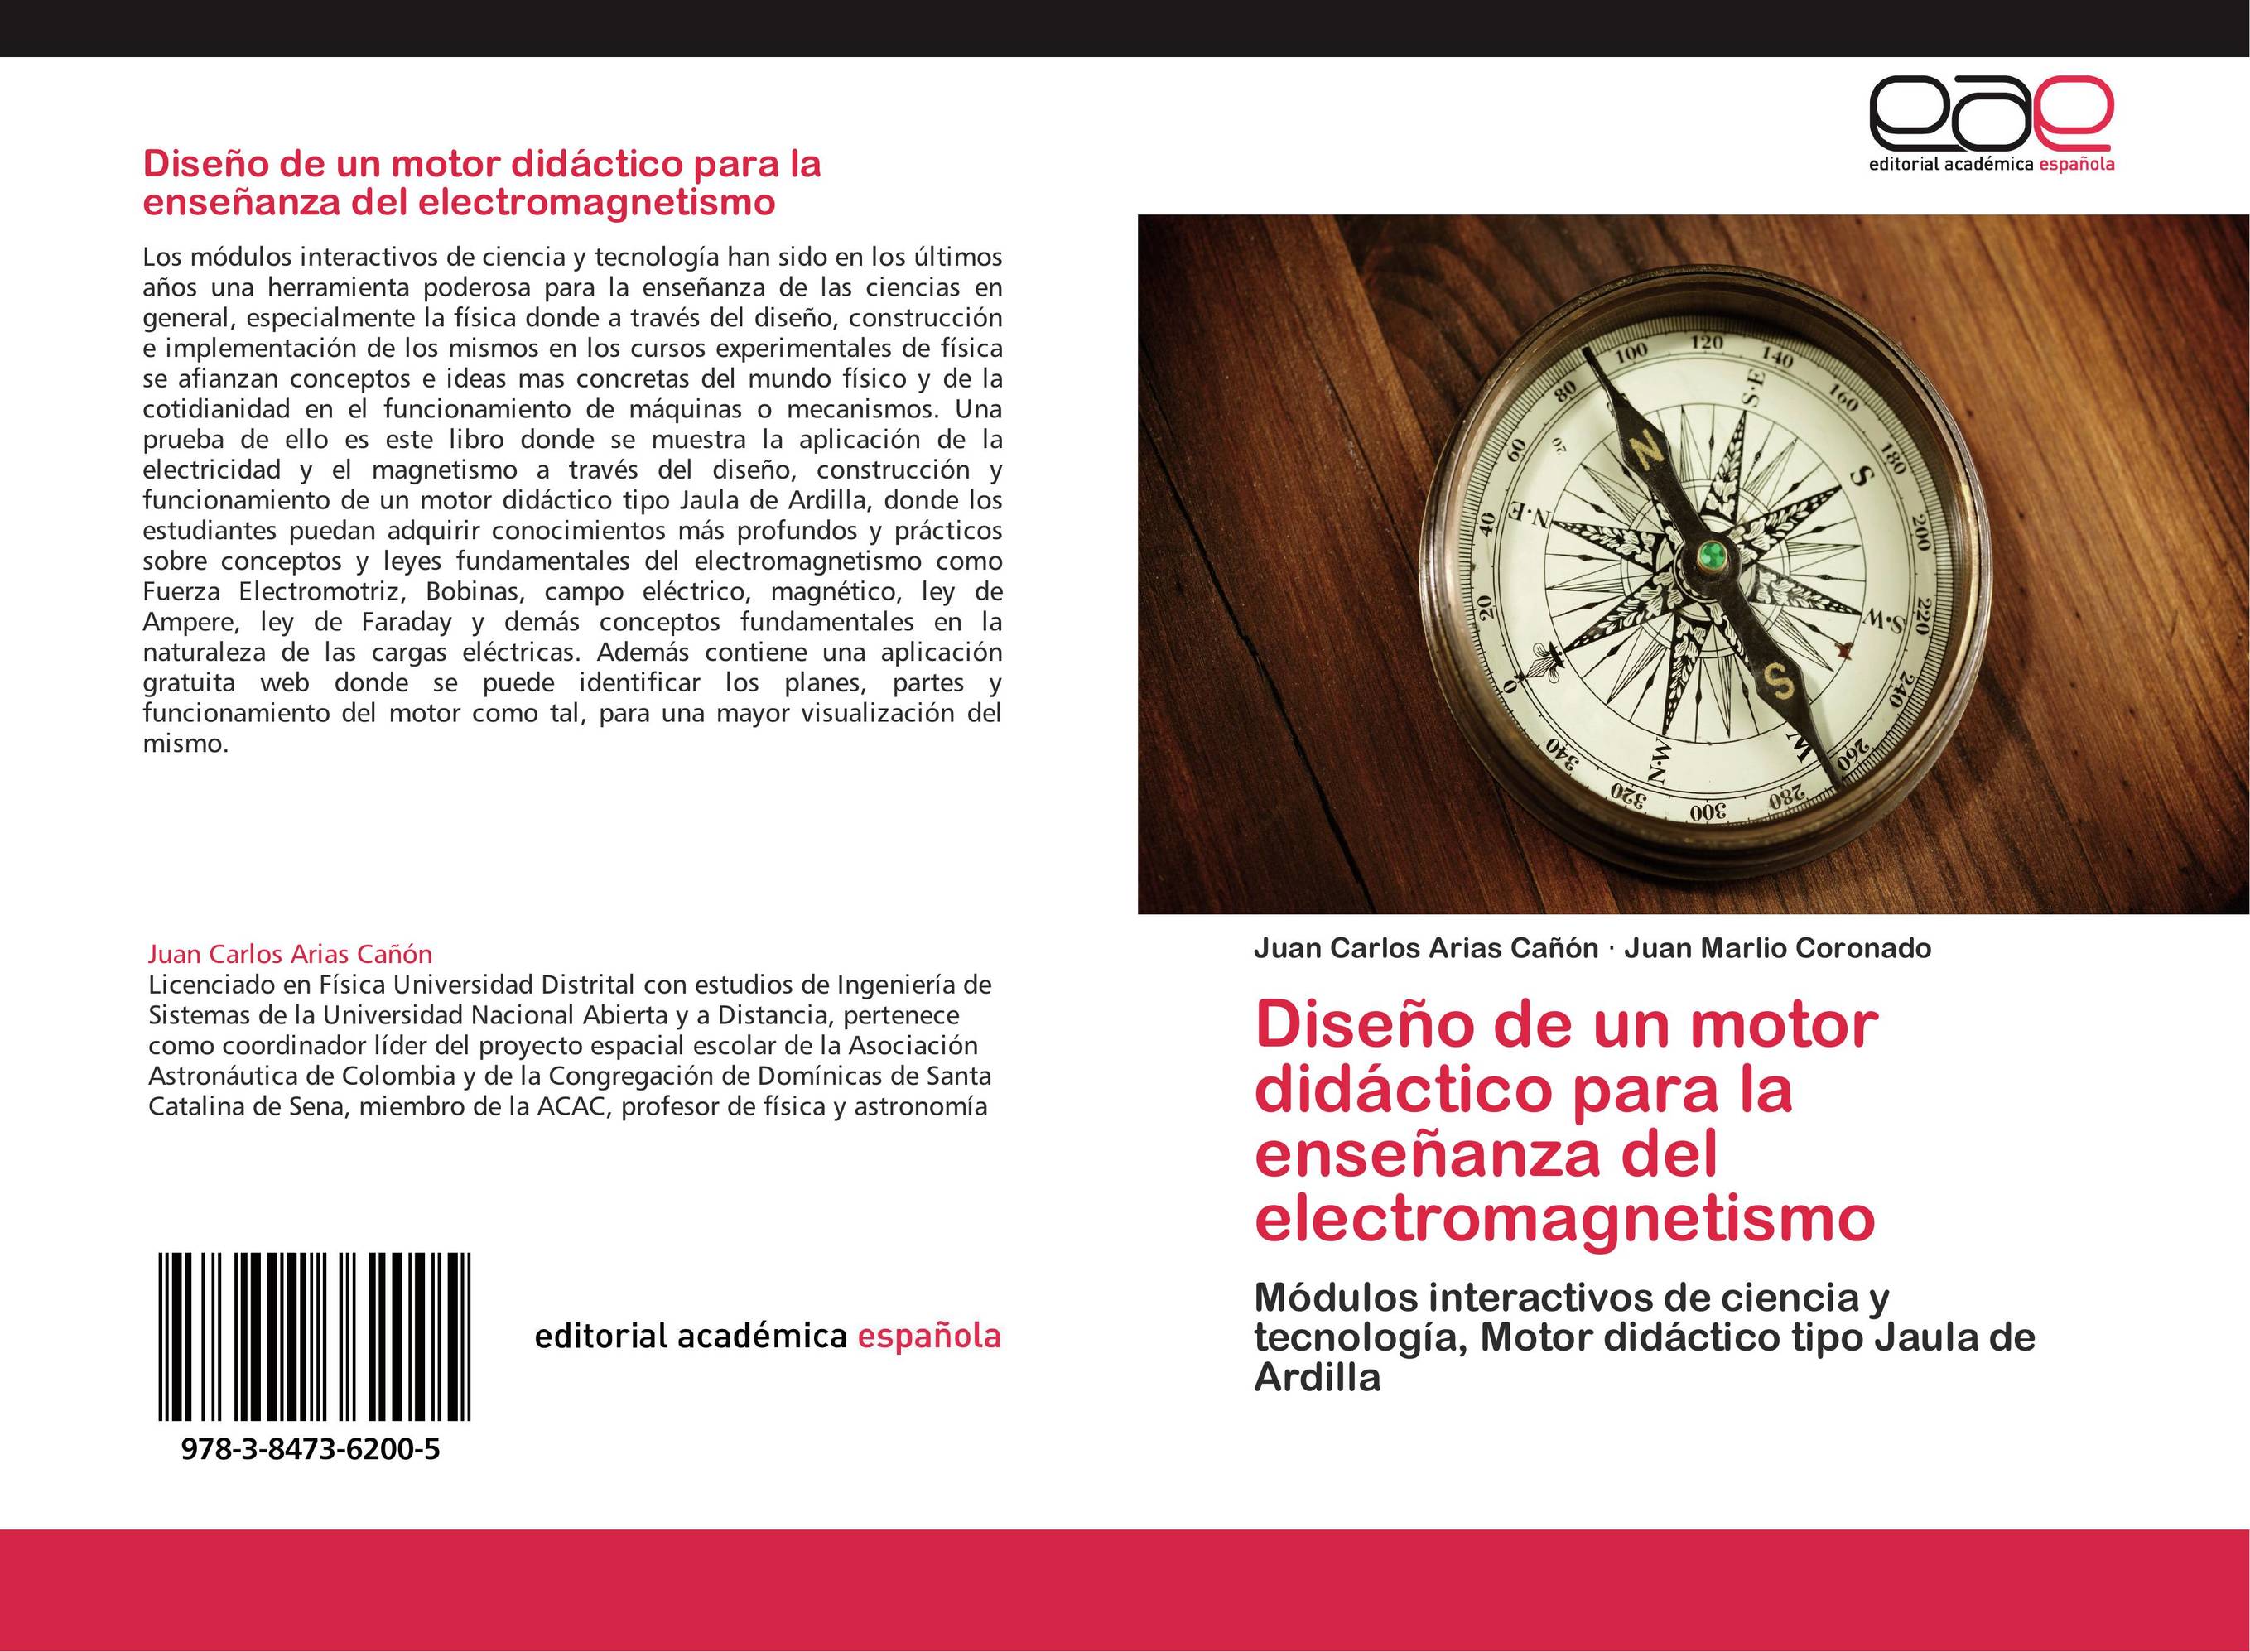 Diseño de un motor didáctico para la enseñanza del electromagnetismo